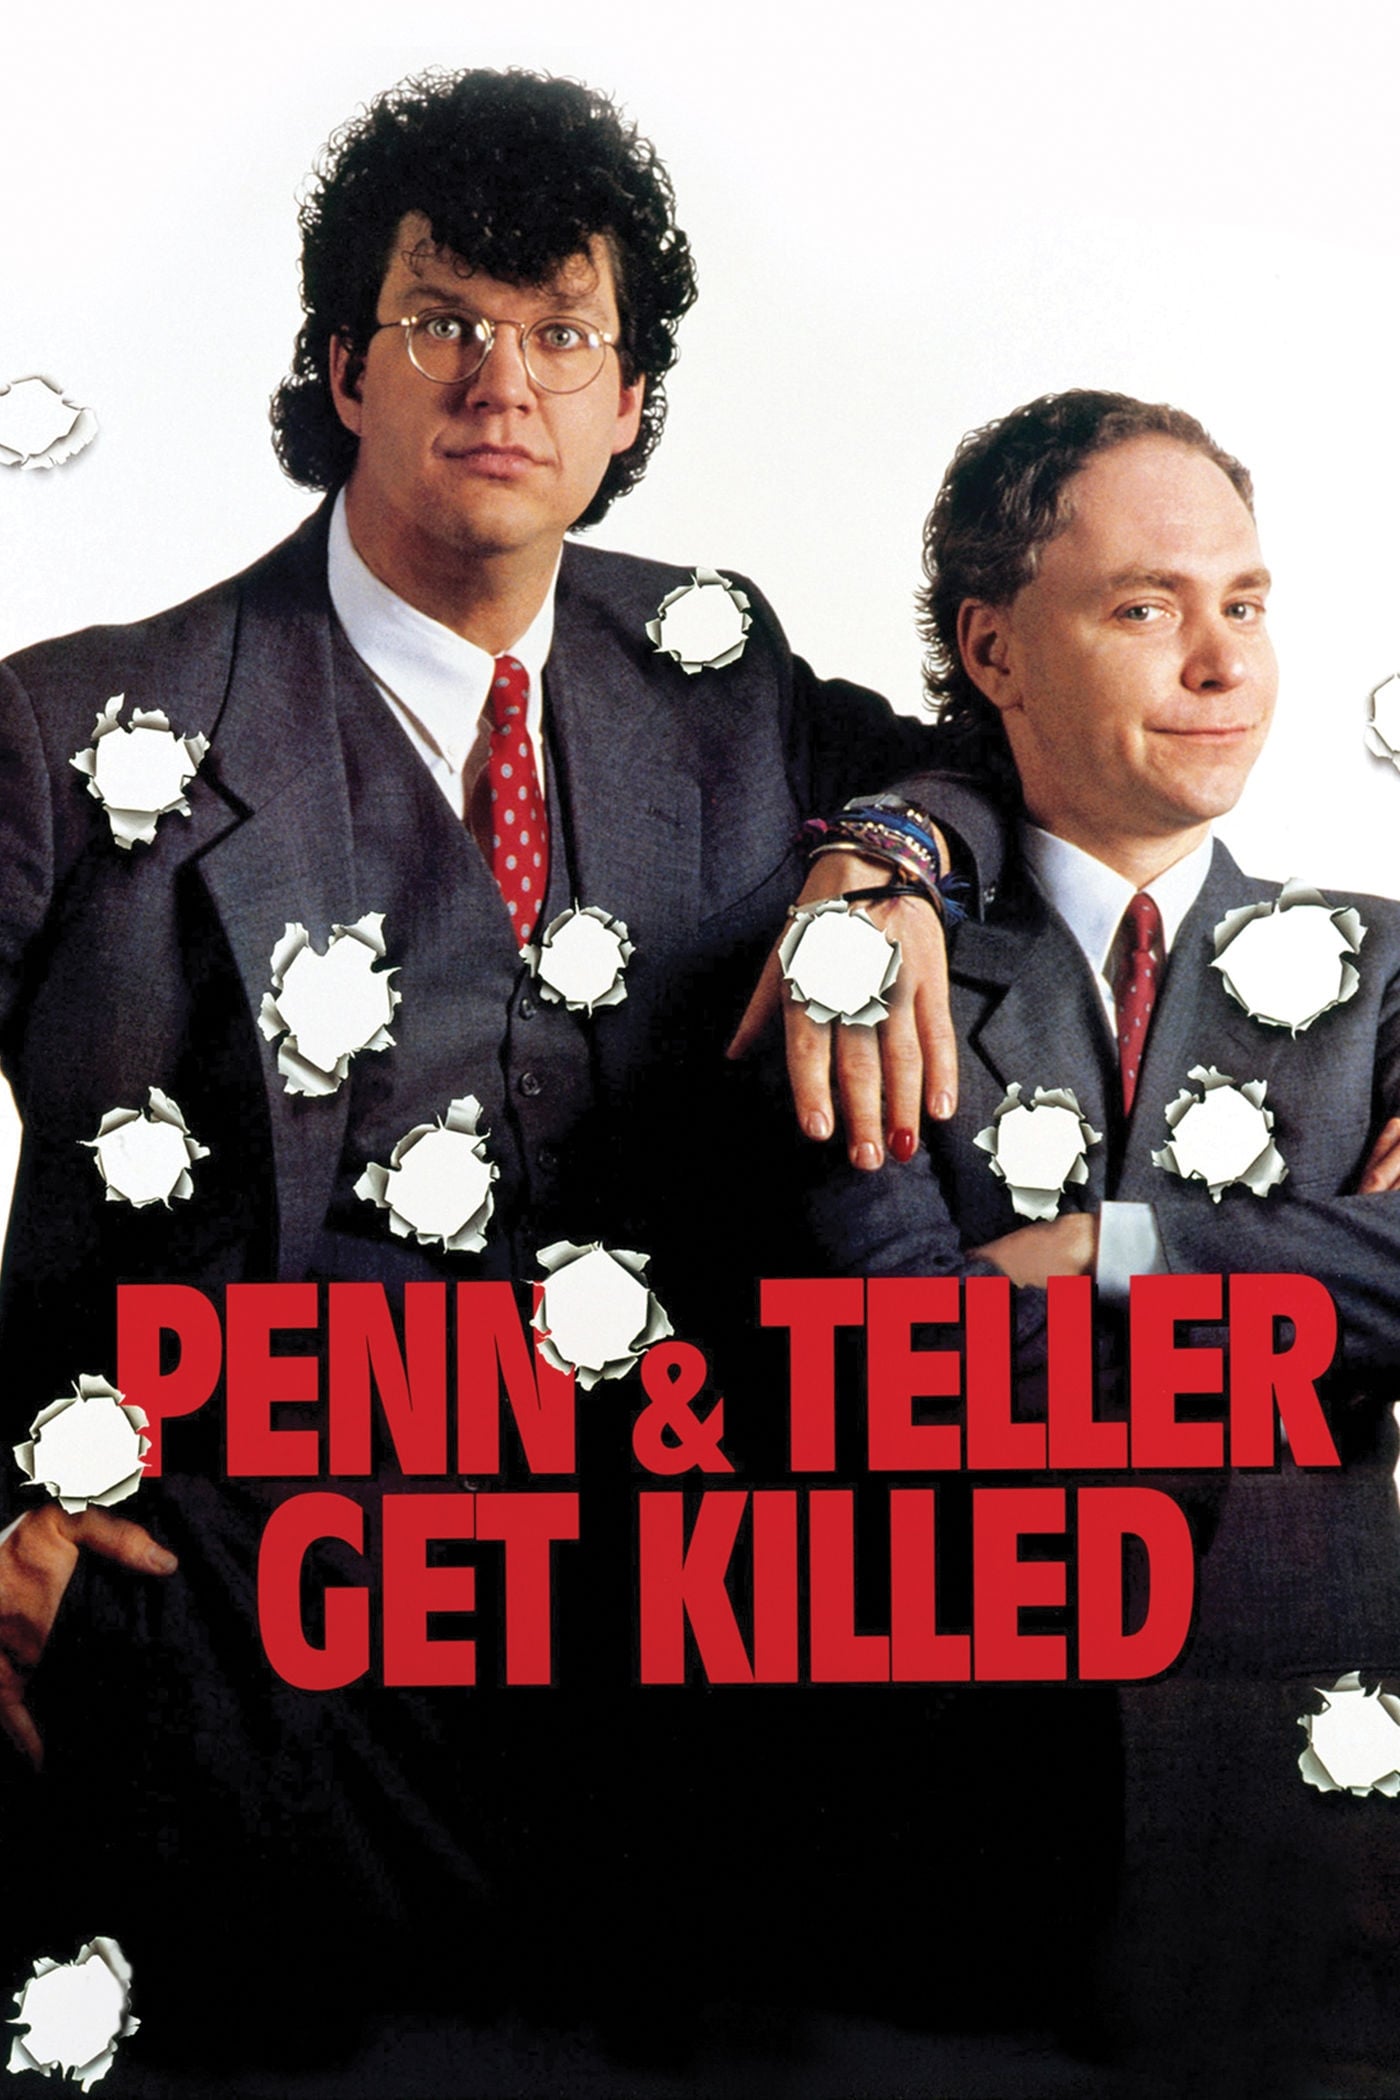 Penn & Teller Get Killed (1989)